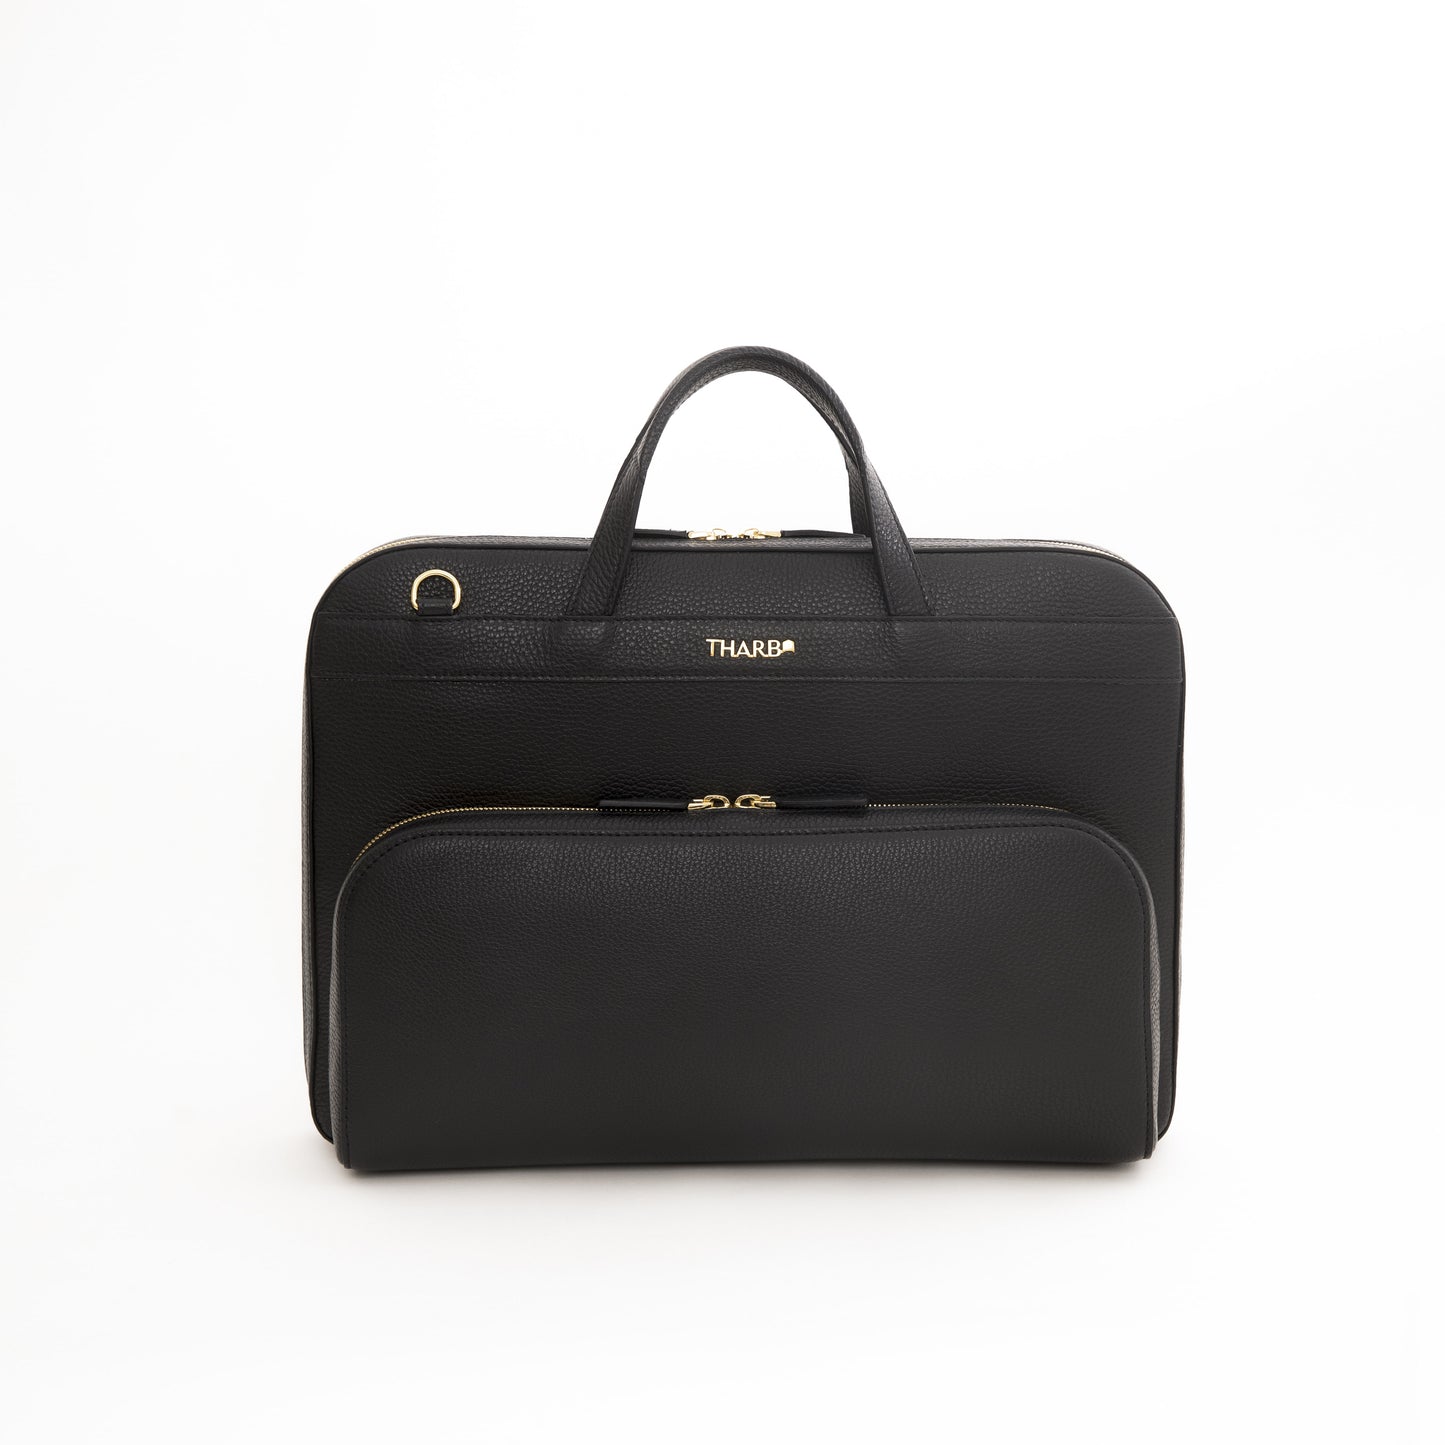 Khalifa briefcase